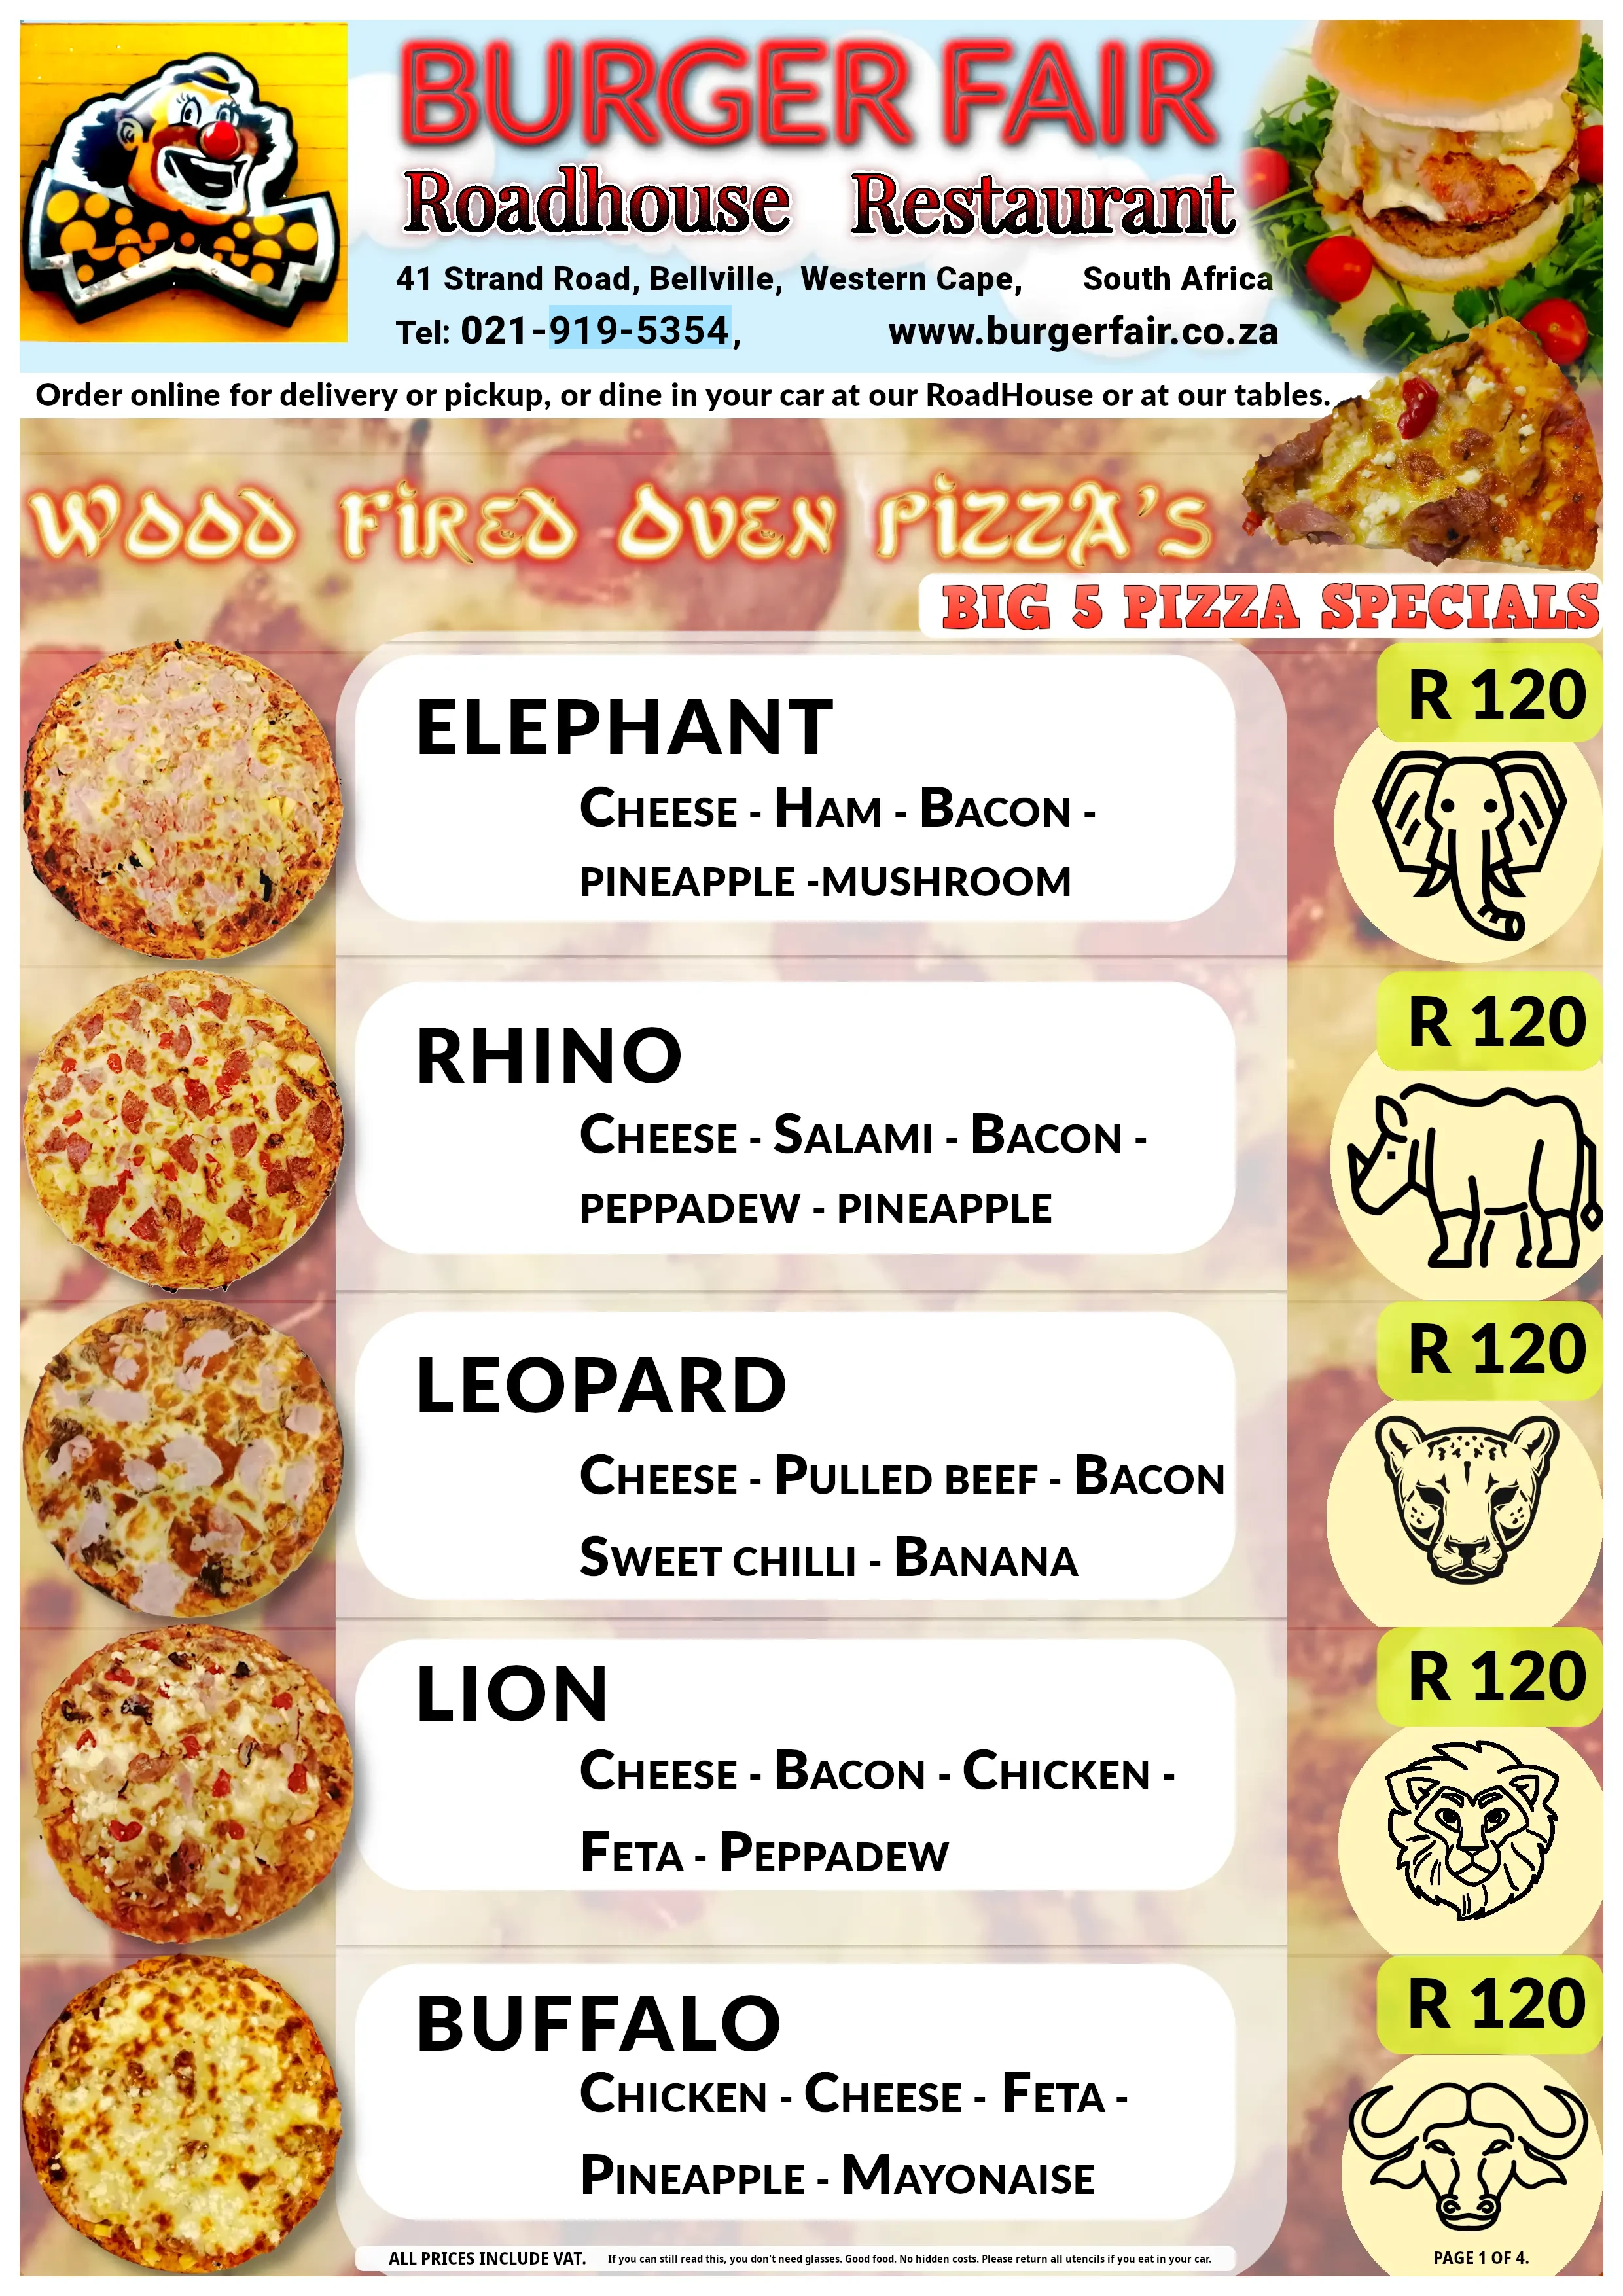 Big 5 Pizza Specials